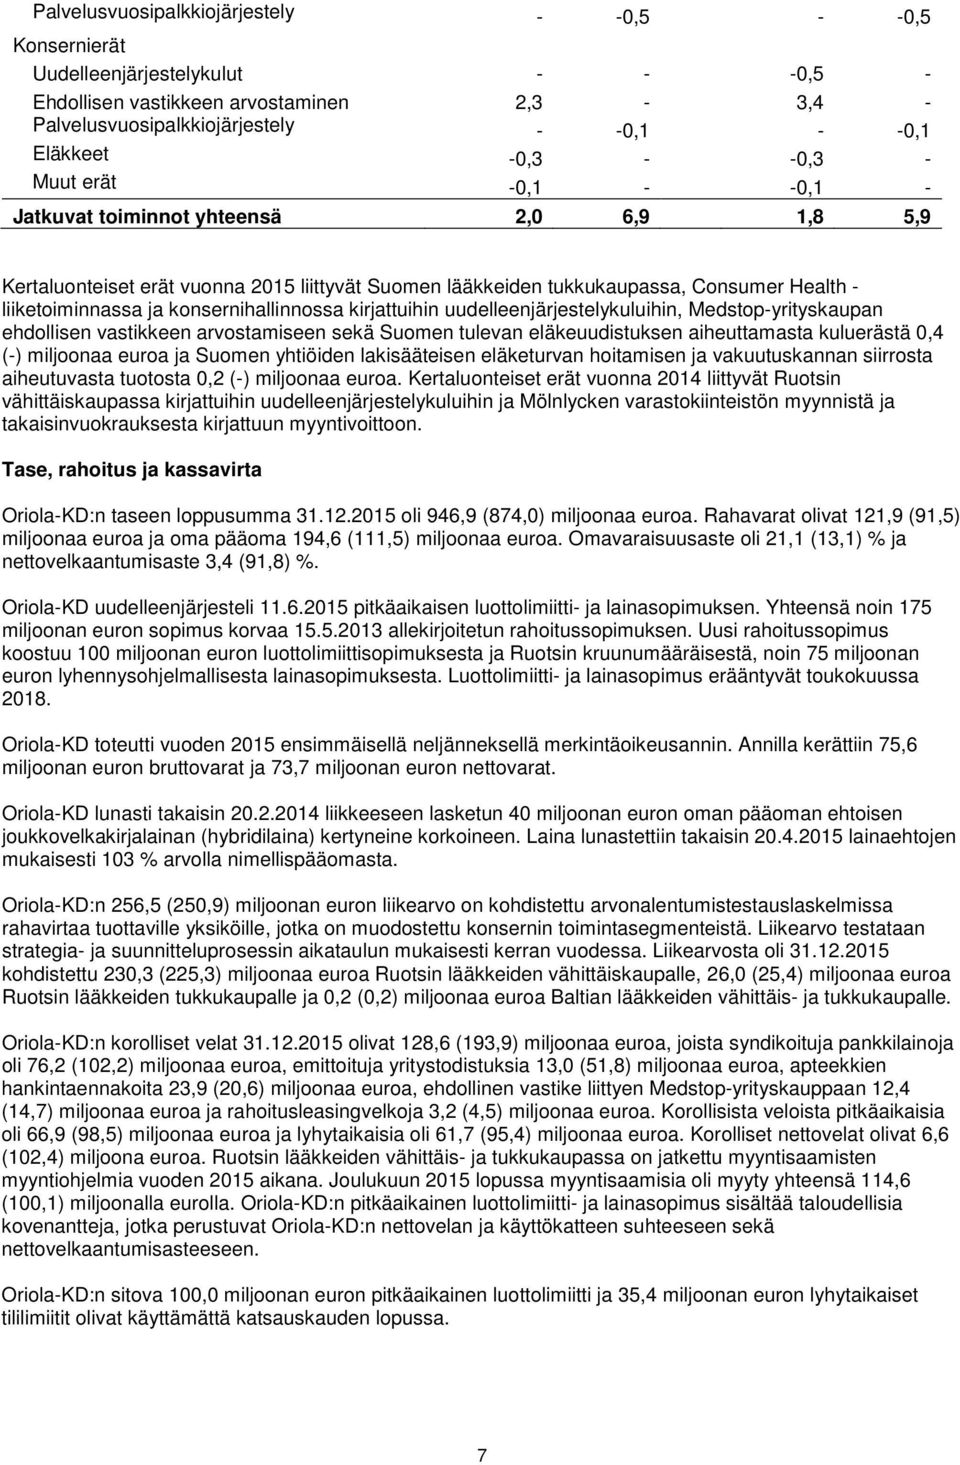 konsernihallinnossa kirjattuihin uudelleenjärjestelykuluihin, Medstop-yrityskaupan ehdollisen vastikkeen arvostamiseen sekä Suomen tulevan eläkeuudistuksen aiheuttamasta kuluerästä 0,4 (-) miljoonaa